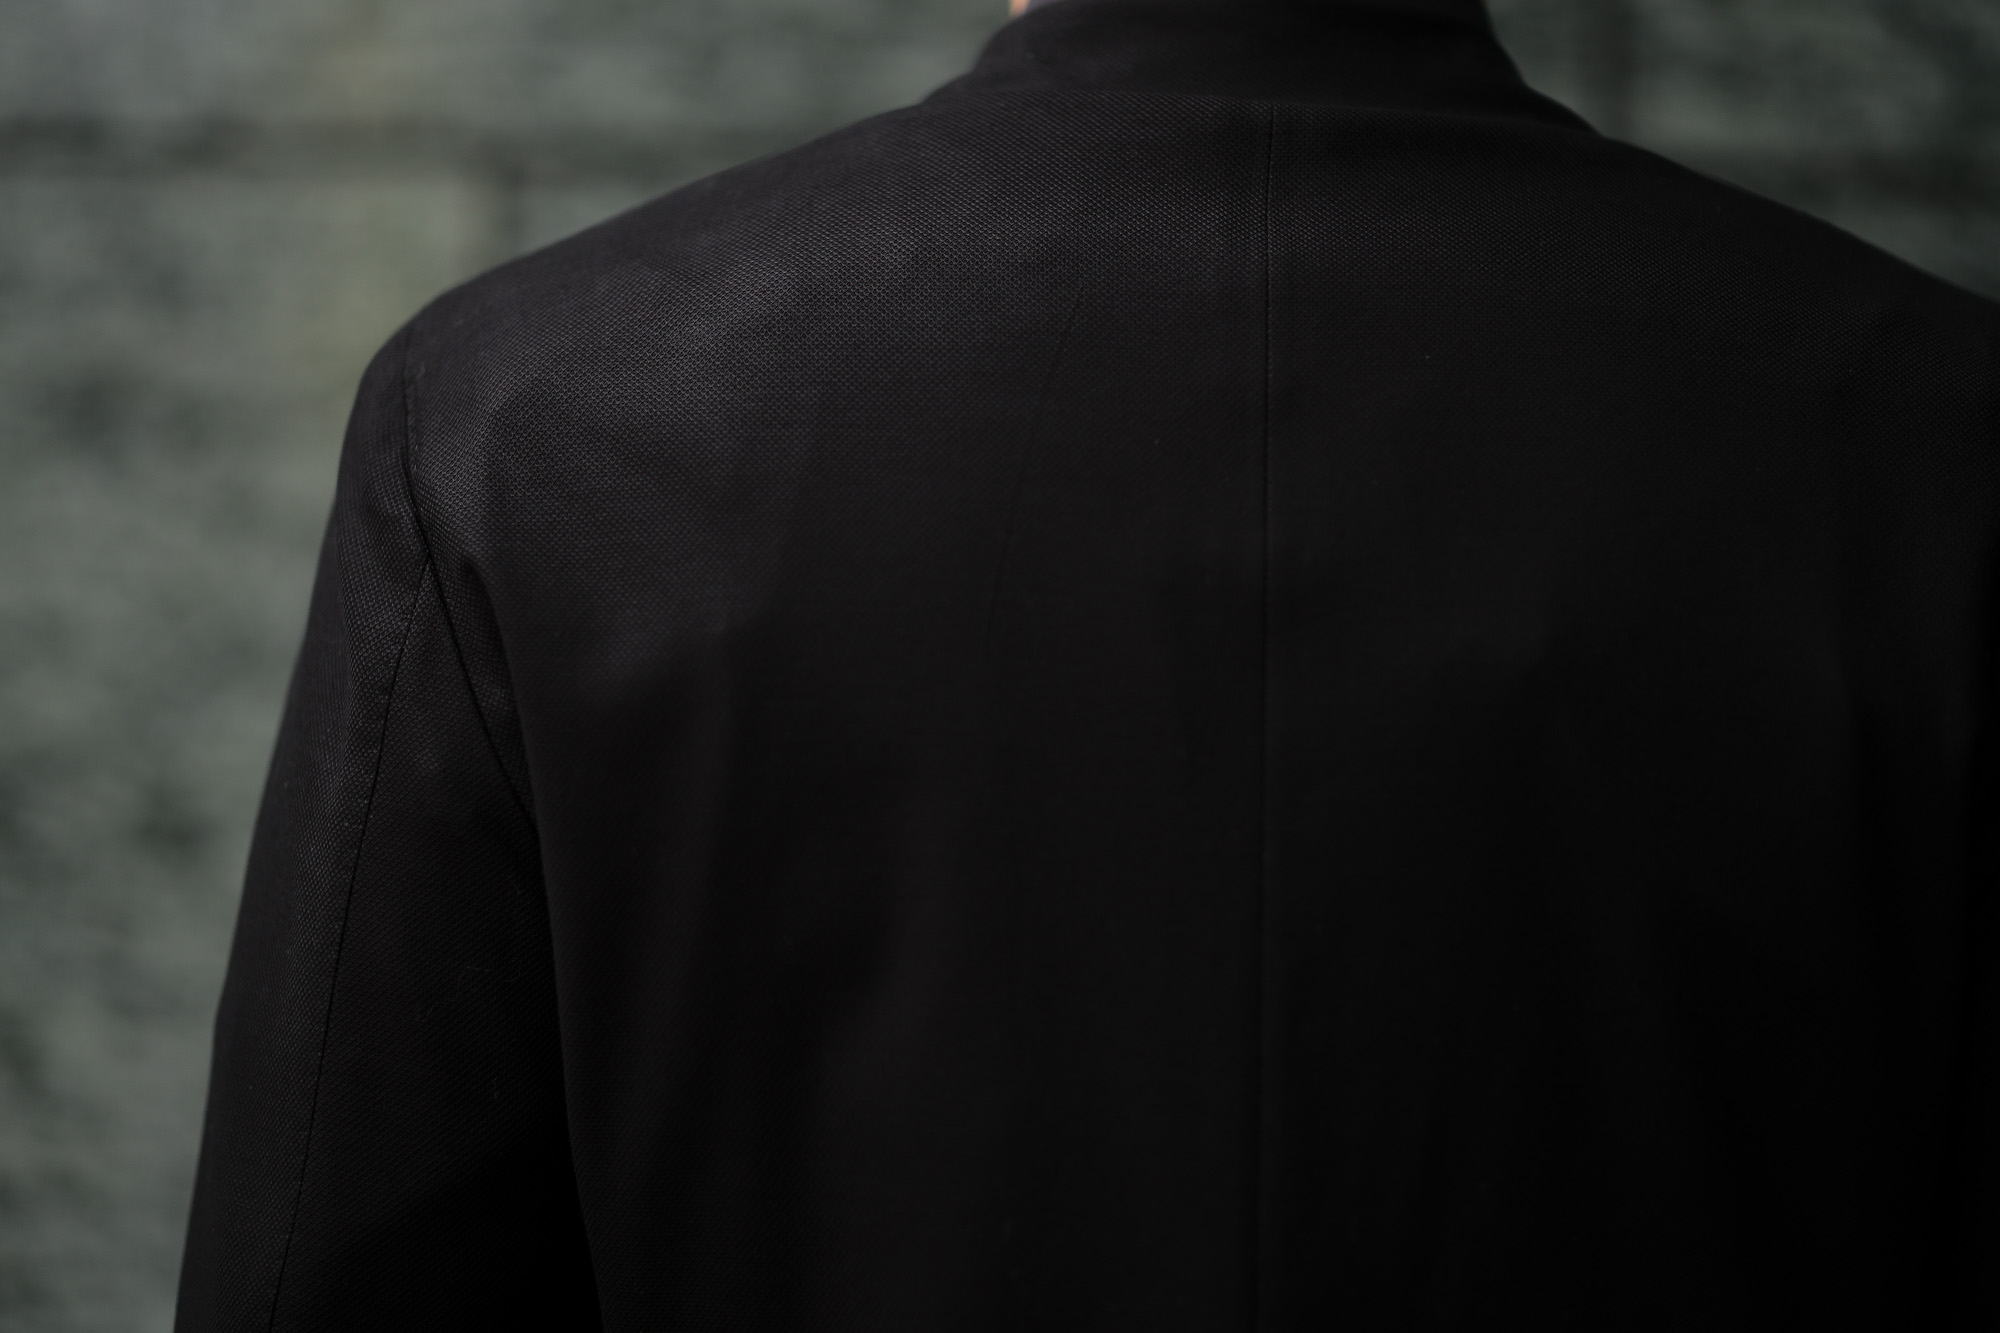 LARDINI (ラルディーニ) Cotton Jersey Jacket (コットン ジャージー ジャケット) LoroPiana (ロロピアーナ) ジャージ ジャケット BLACK (ブラック・7) made in italy (イタリア製) 2019 春夏新作 愛知 名古屋 alto e diritto altoediritto アルトエデリット